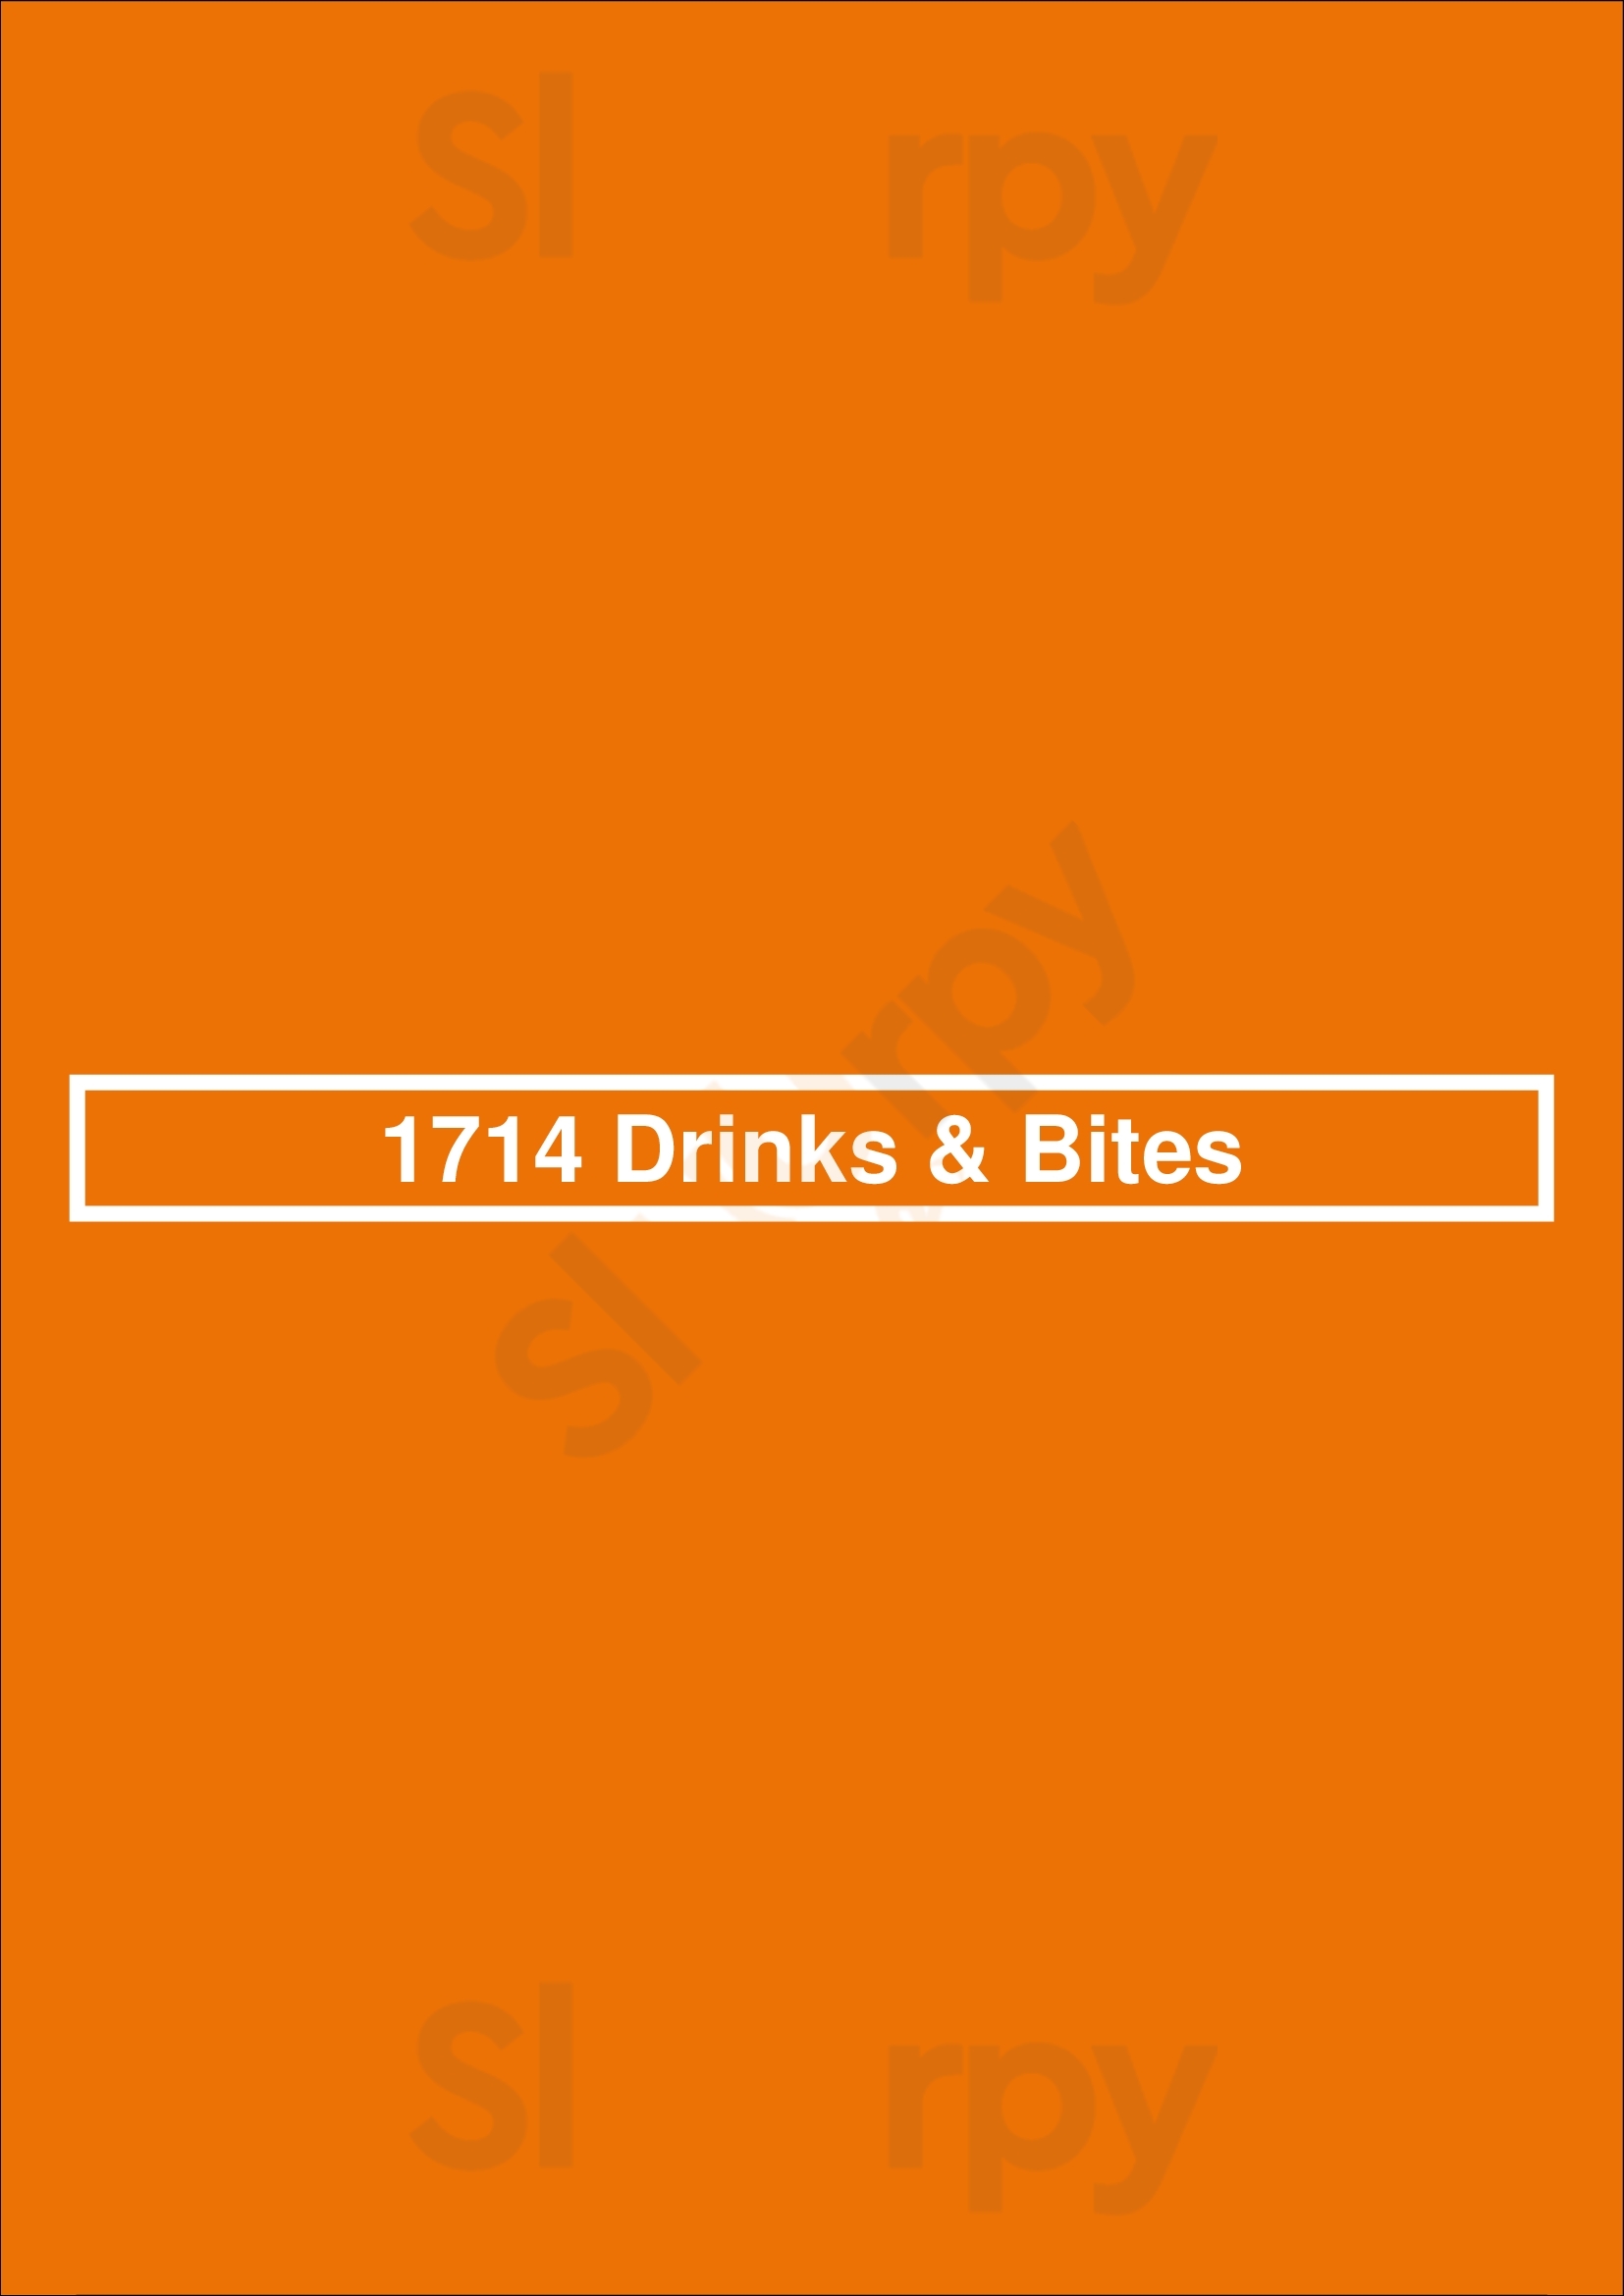 1714 Drinks & Bites Schiedam Menu - 1